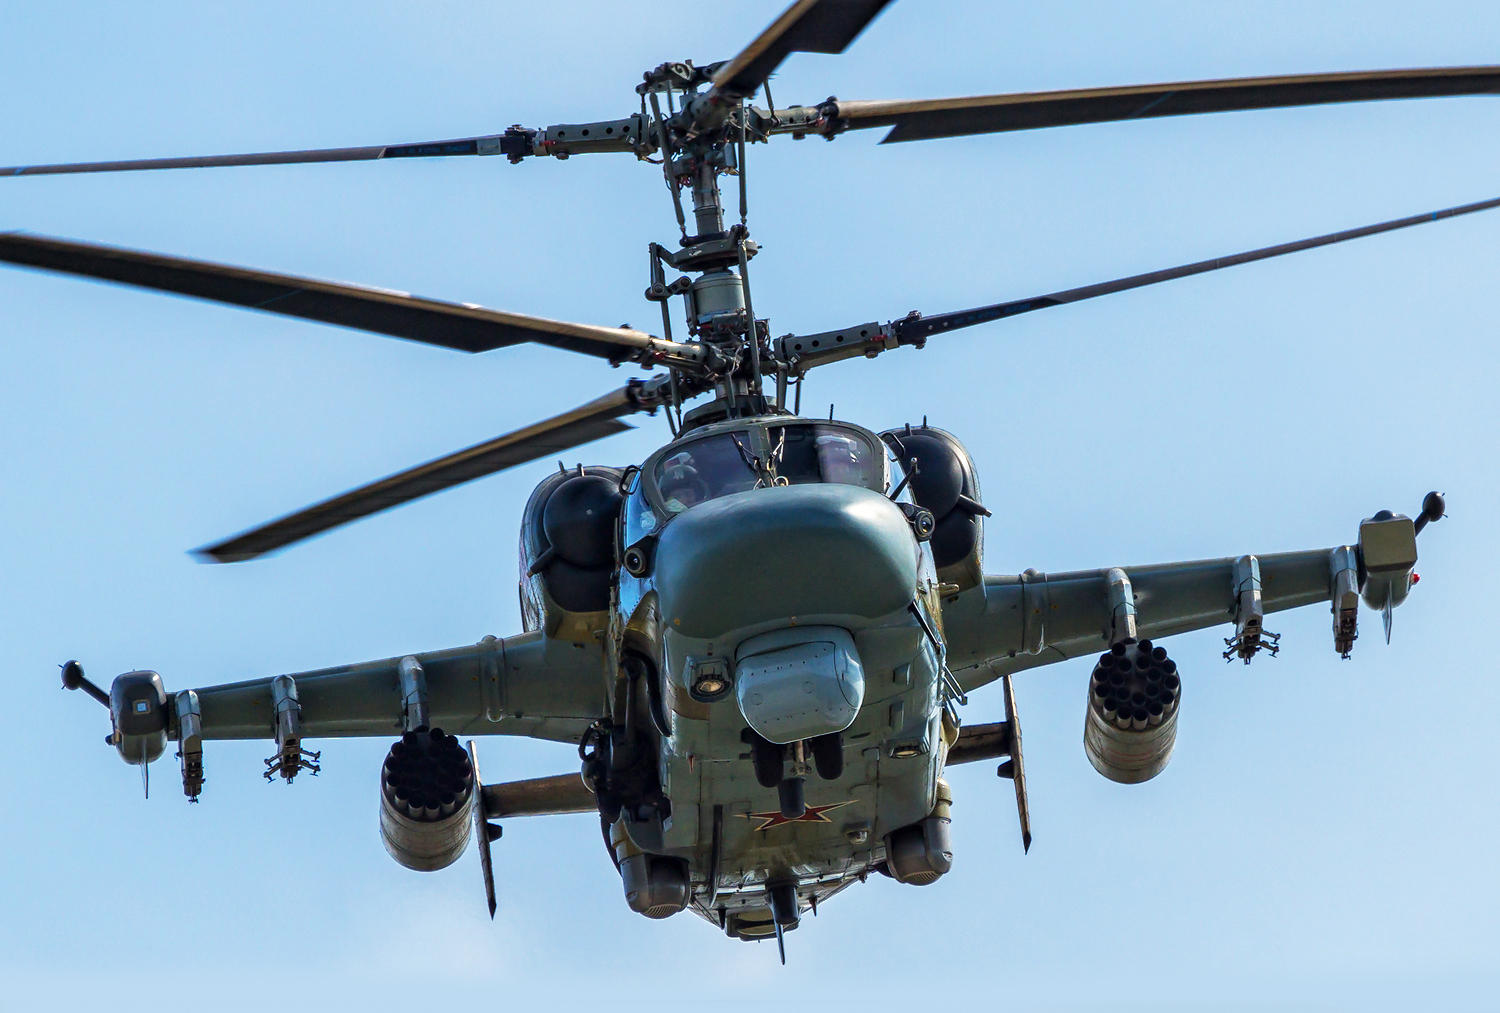 俄军"超级短吻鳄"武装直升机试飞成功,究竟"超级"在何